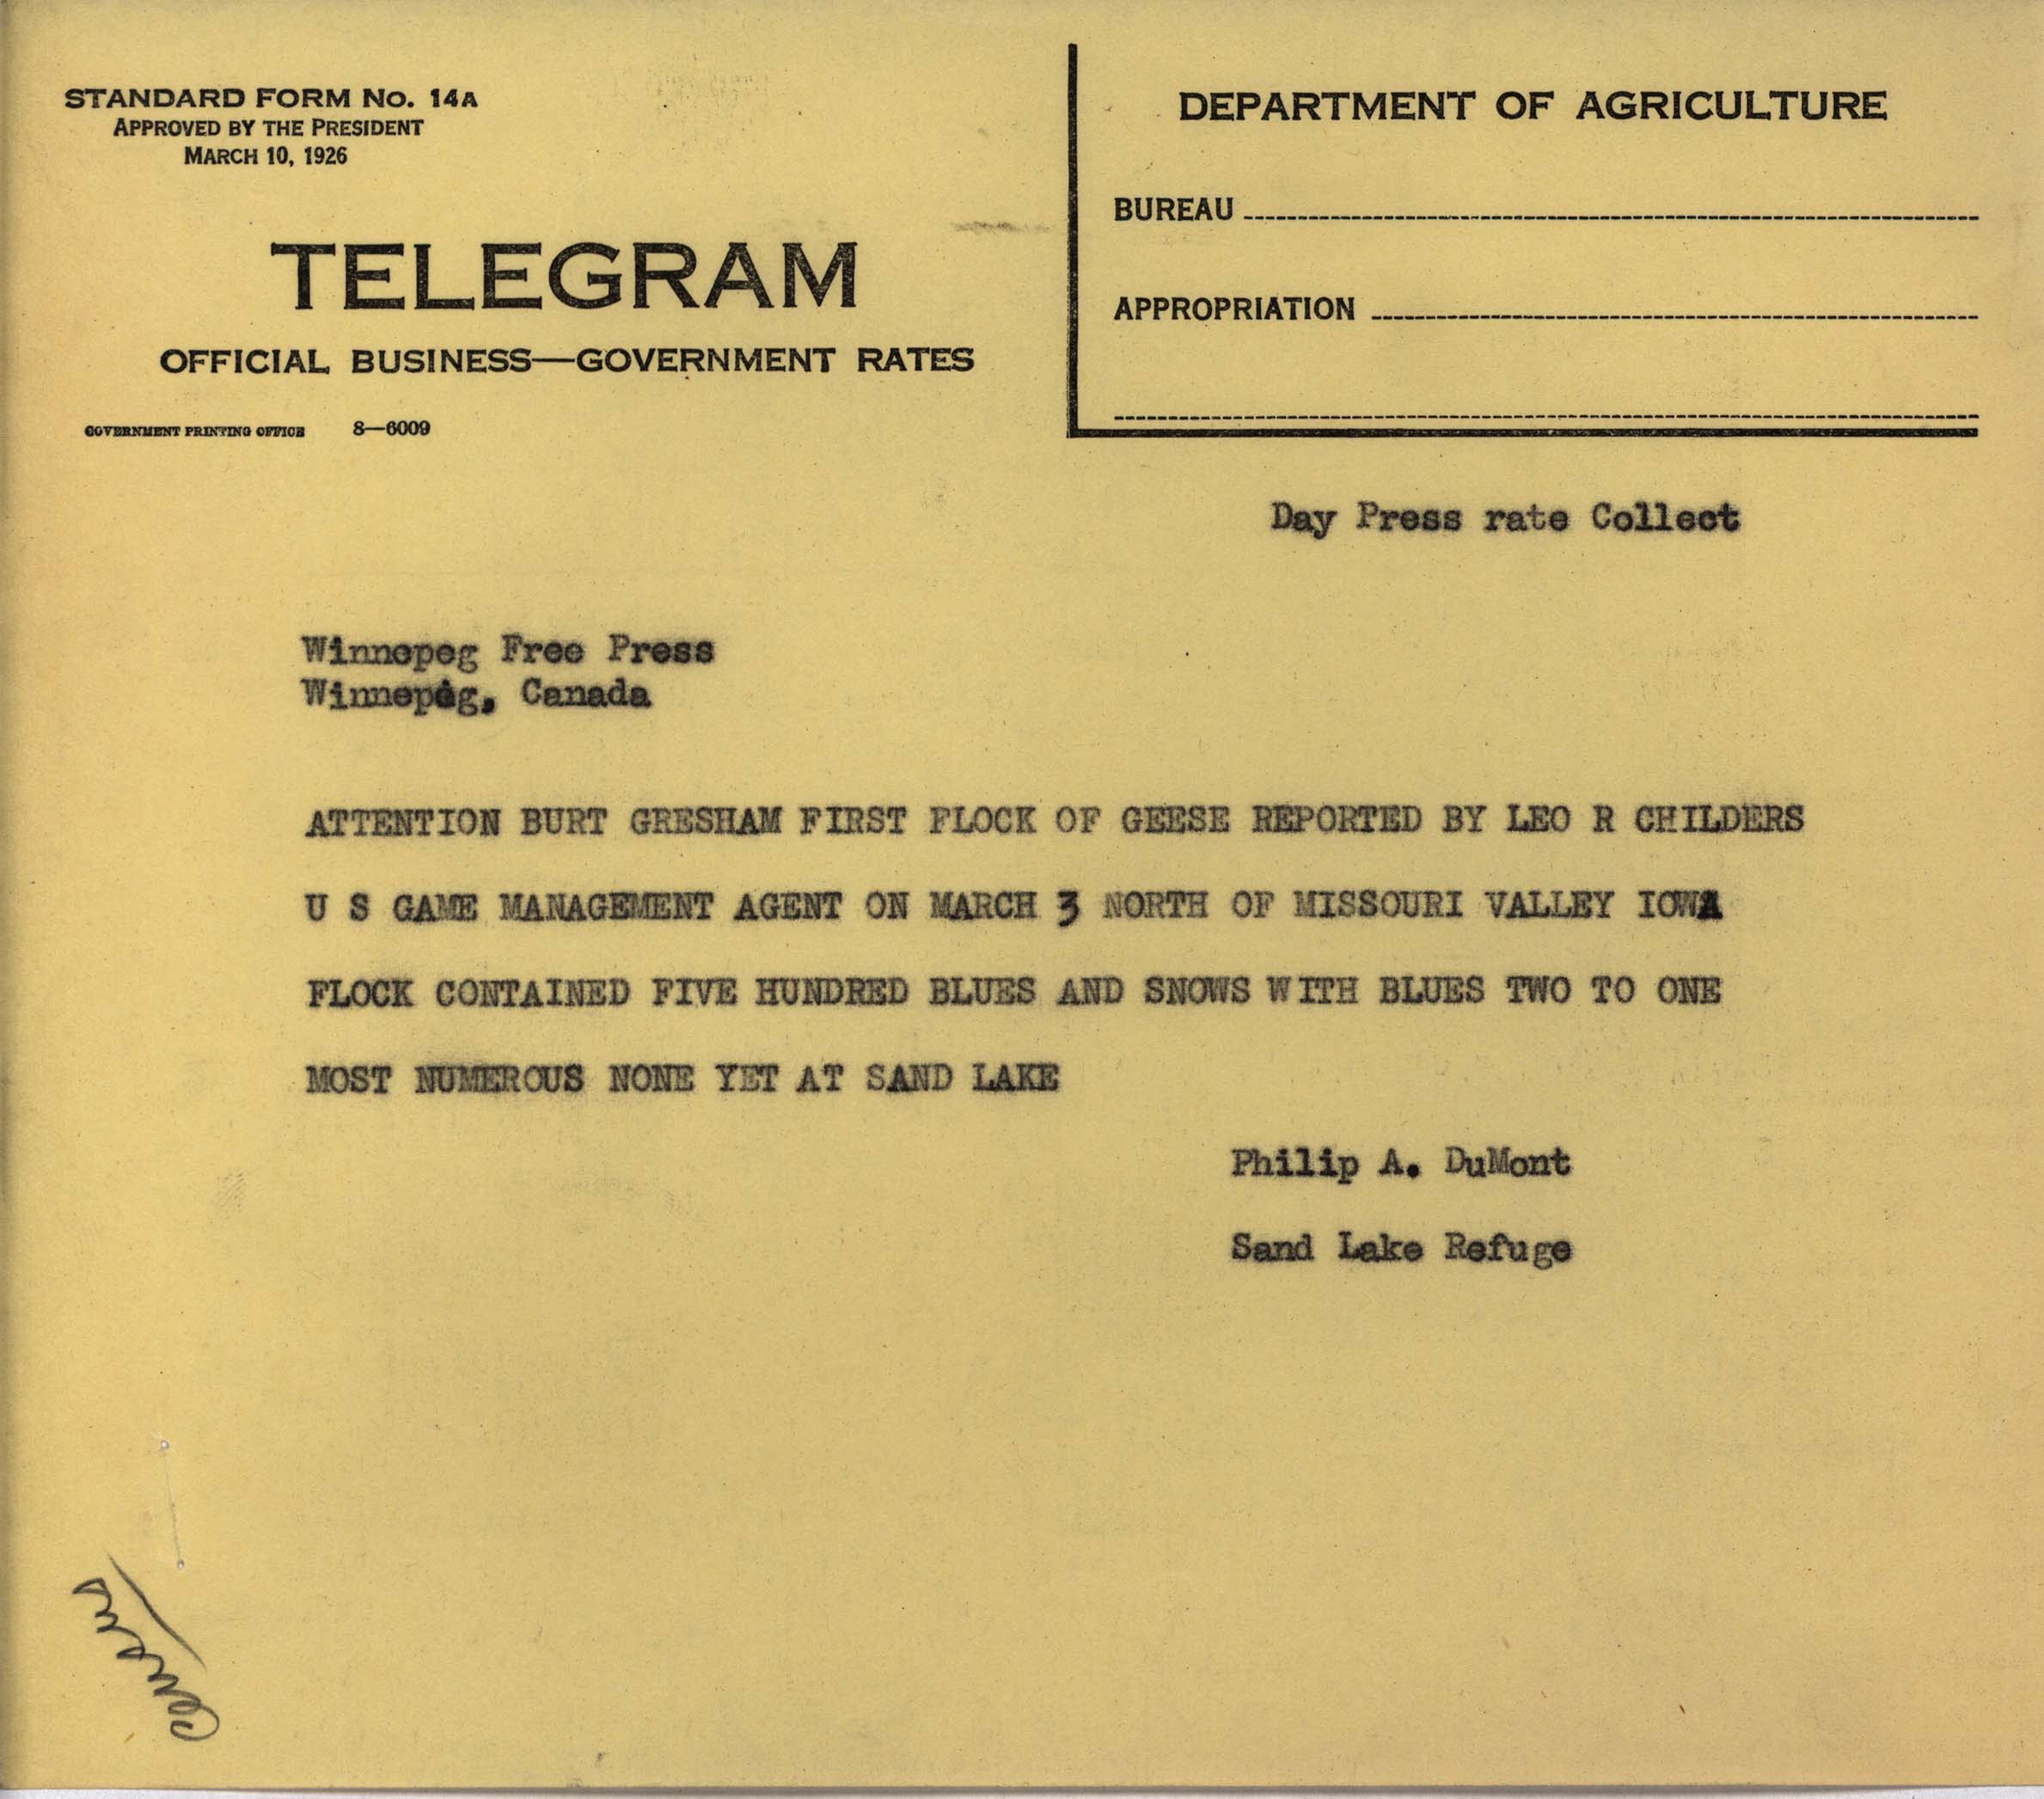 Philip DuMont telegram to Burt Gresham regarding Goose migration, March 1938